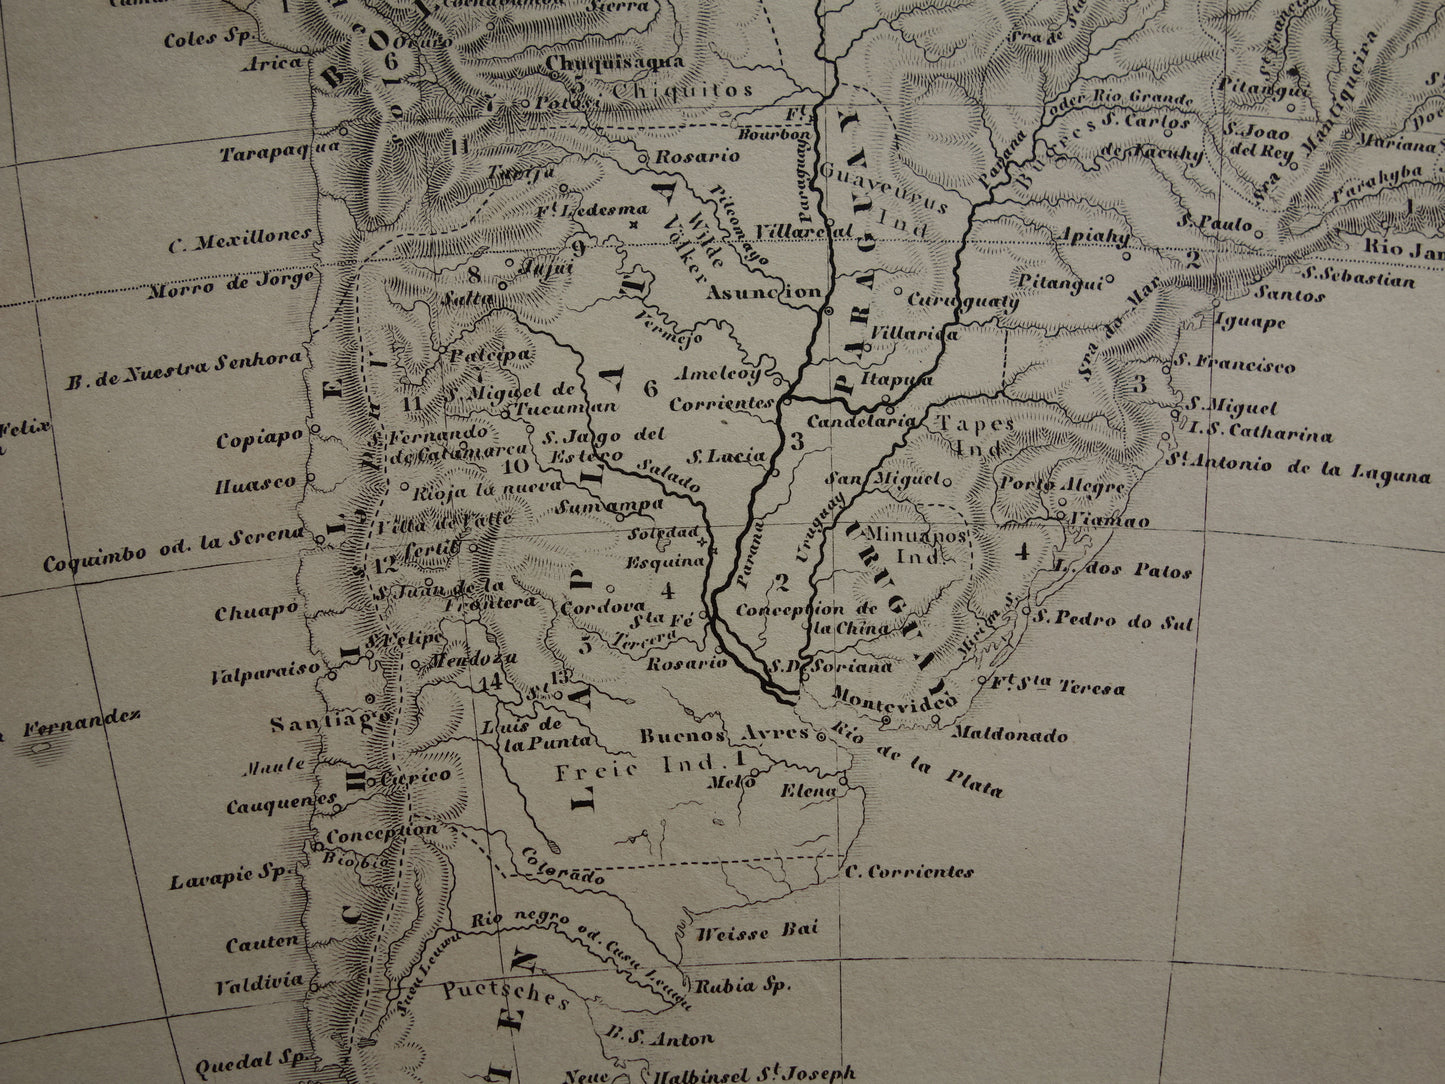 ZUID AMERIKA antieke kaart 170+ jaar oude landkaart van continent uit 1849 - originele vintage historische kaarten Brazilië Patagonië Suriname